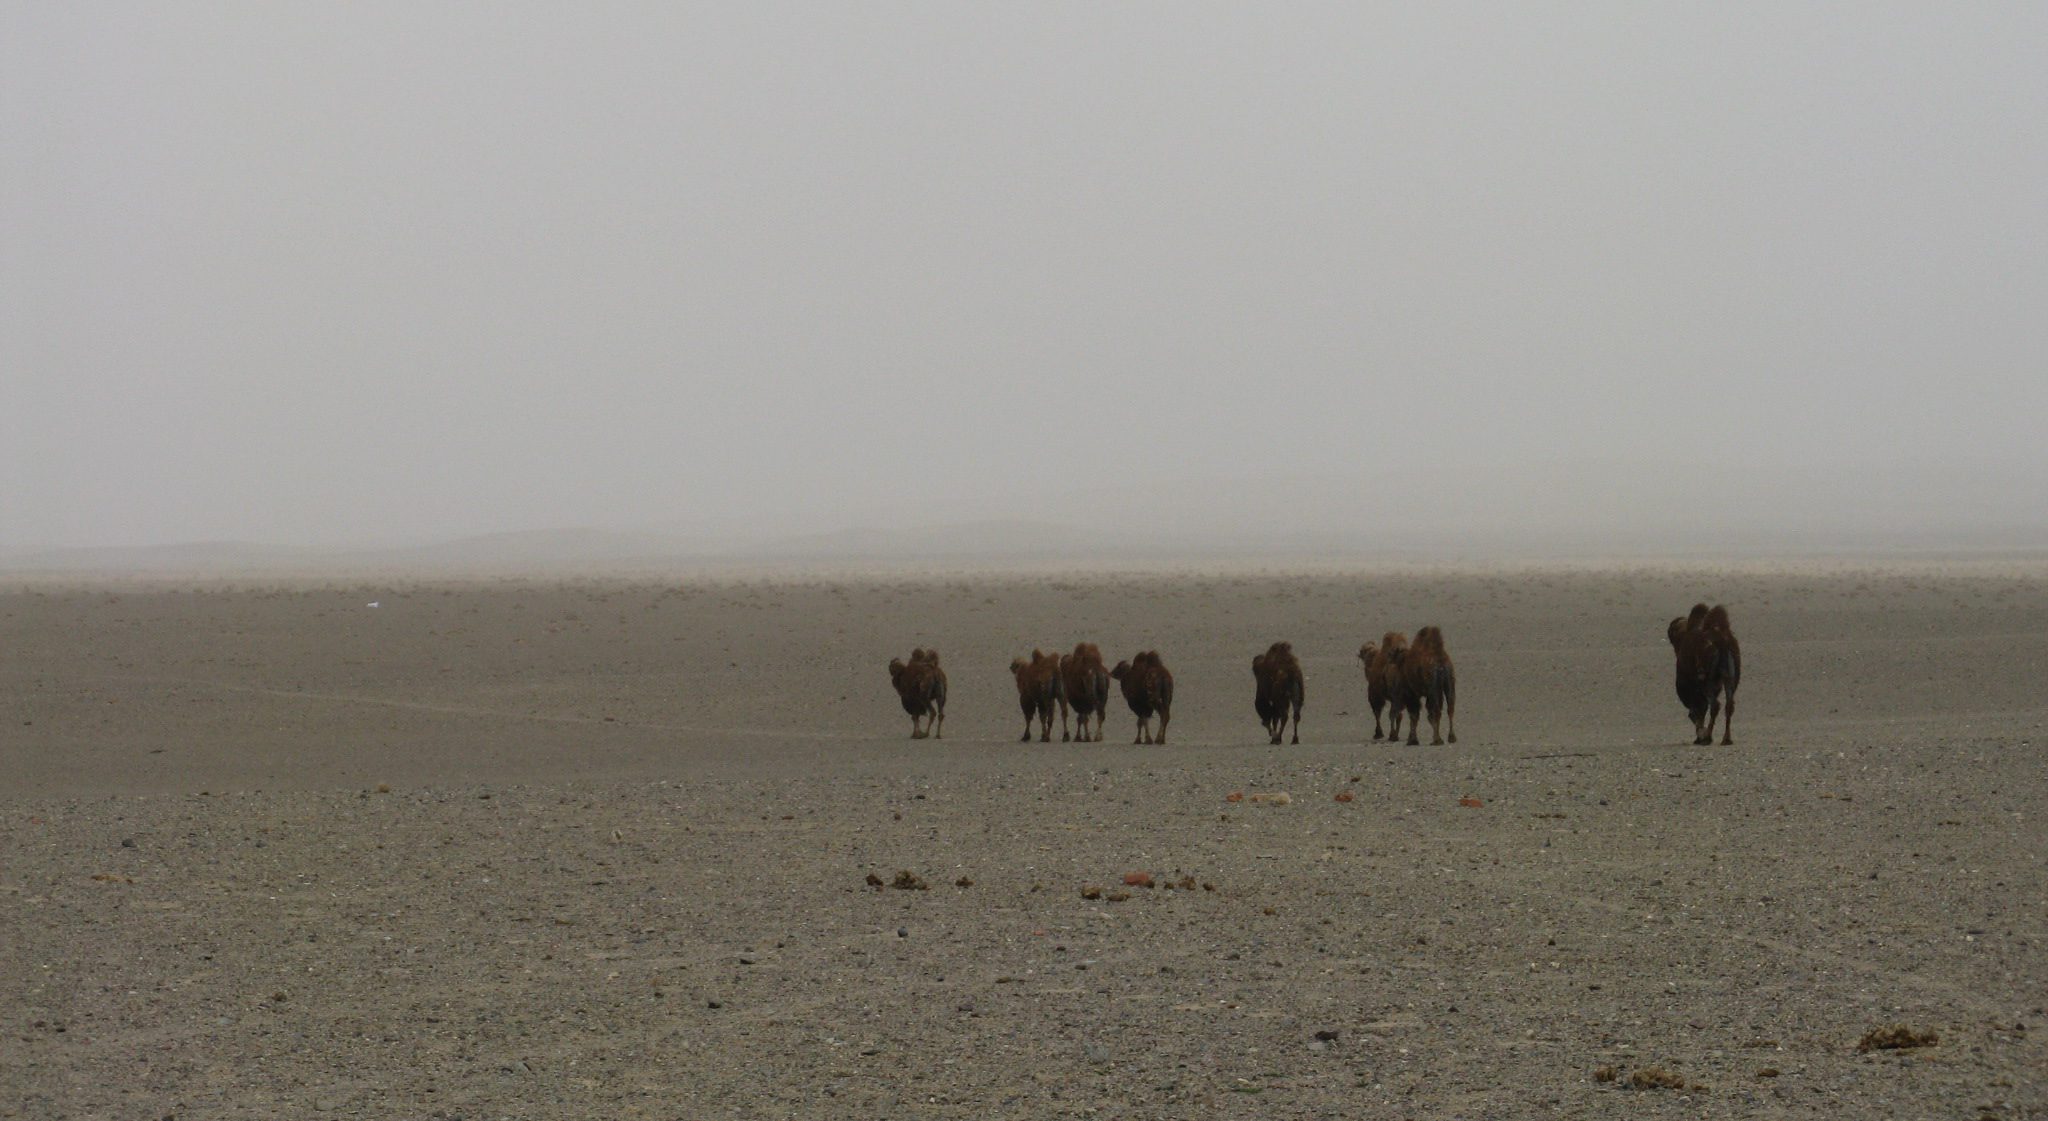 Sandsturm versus Kamel – Wer gewinnt?